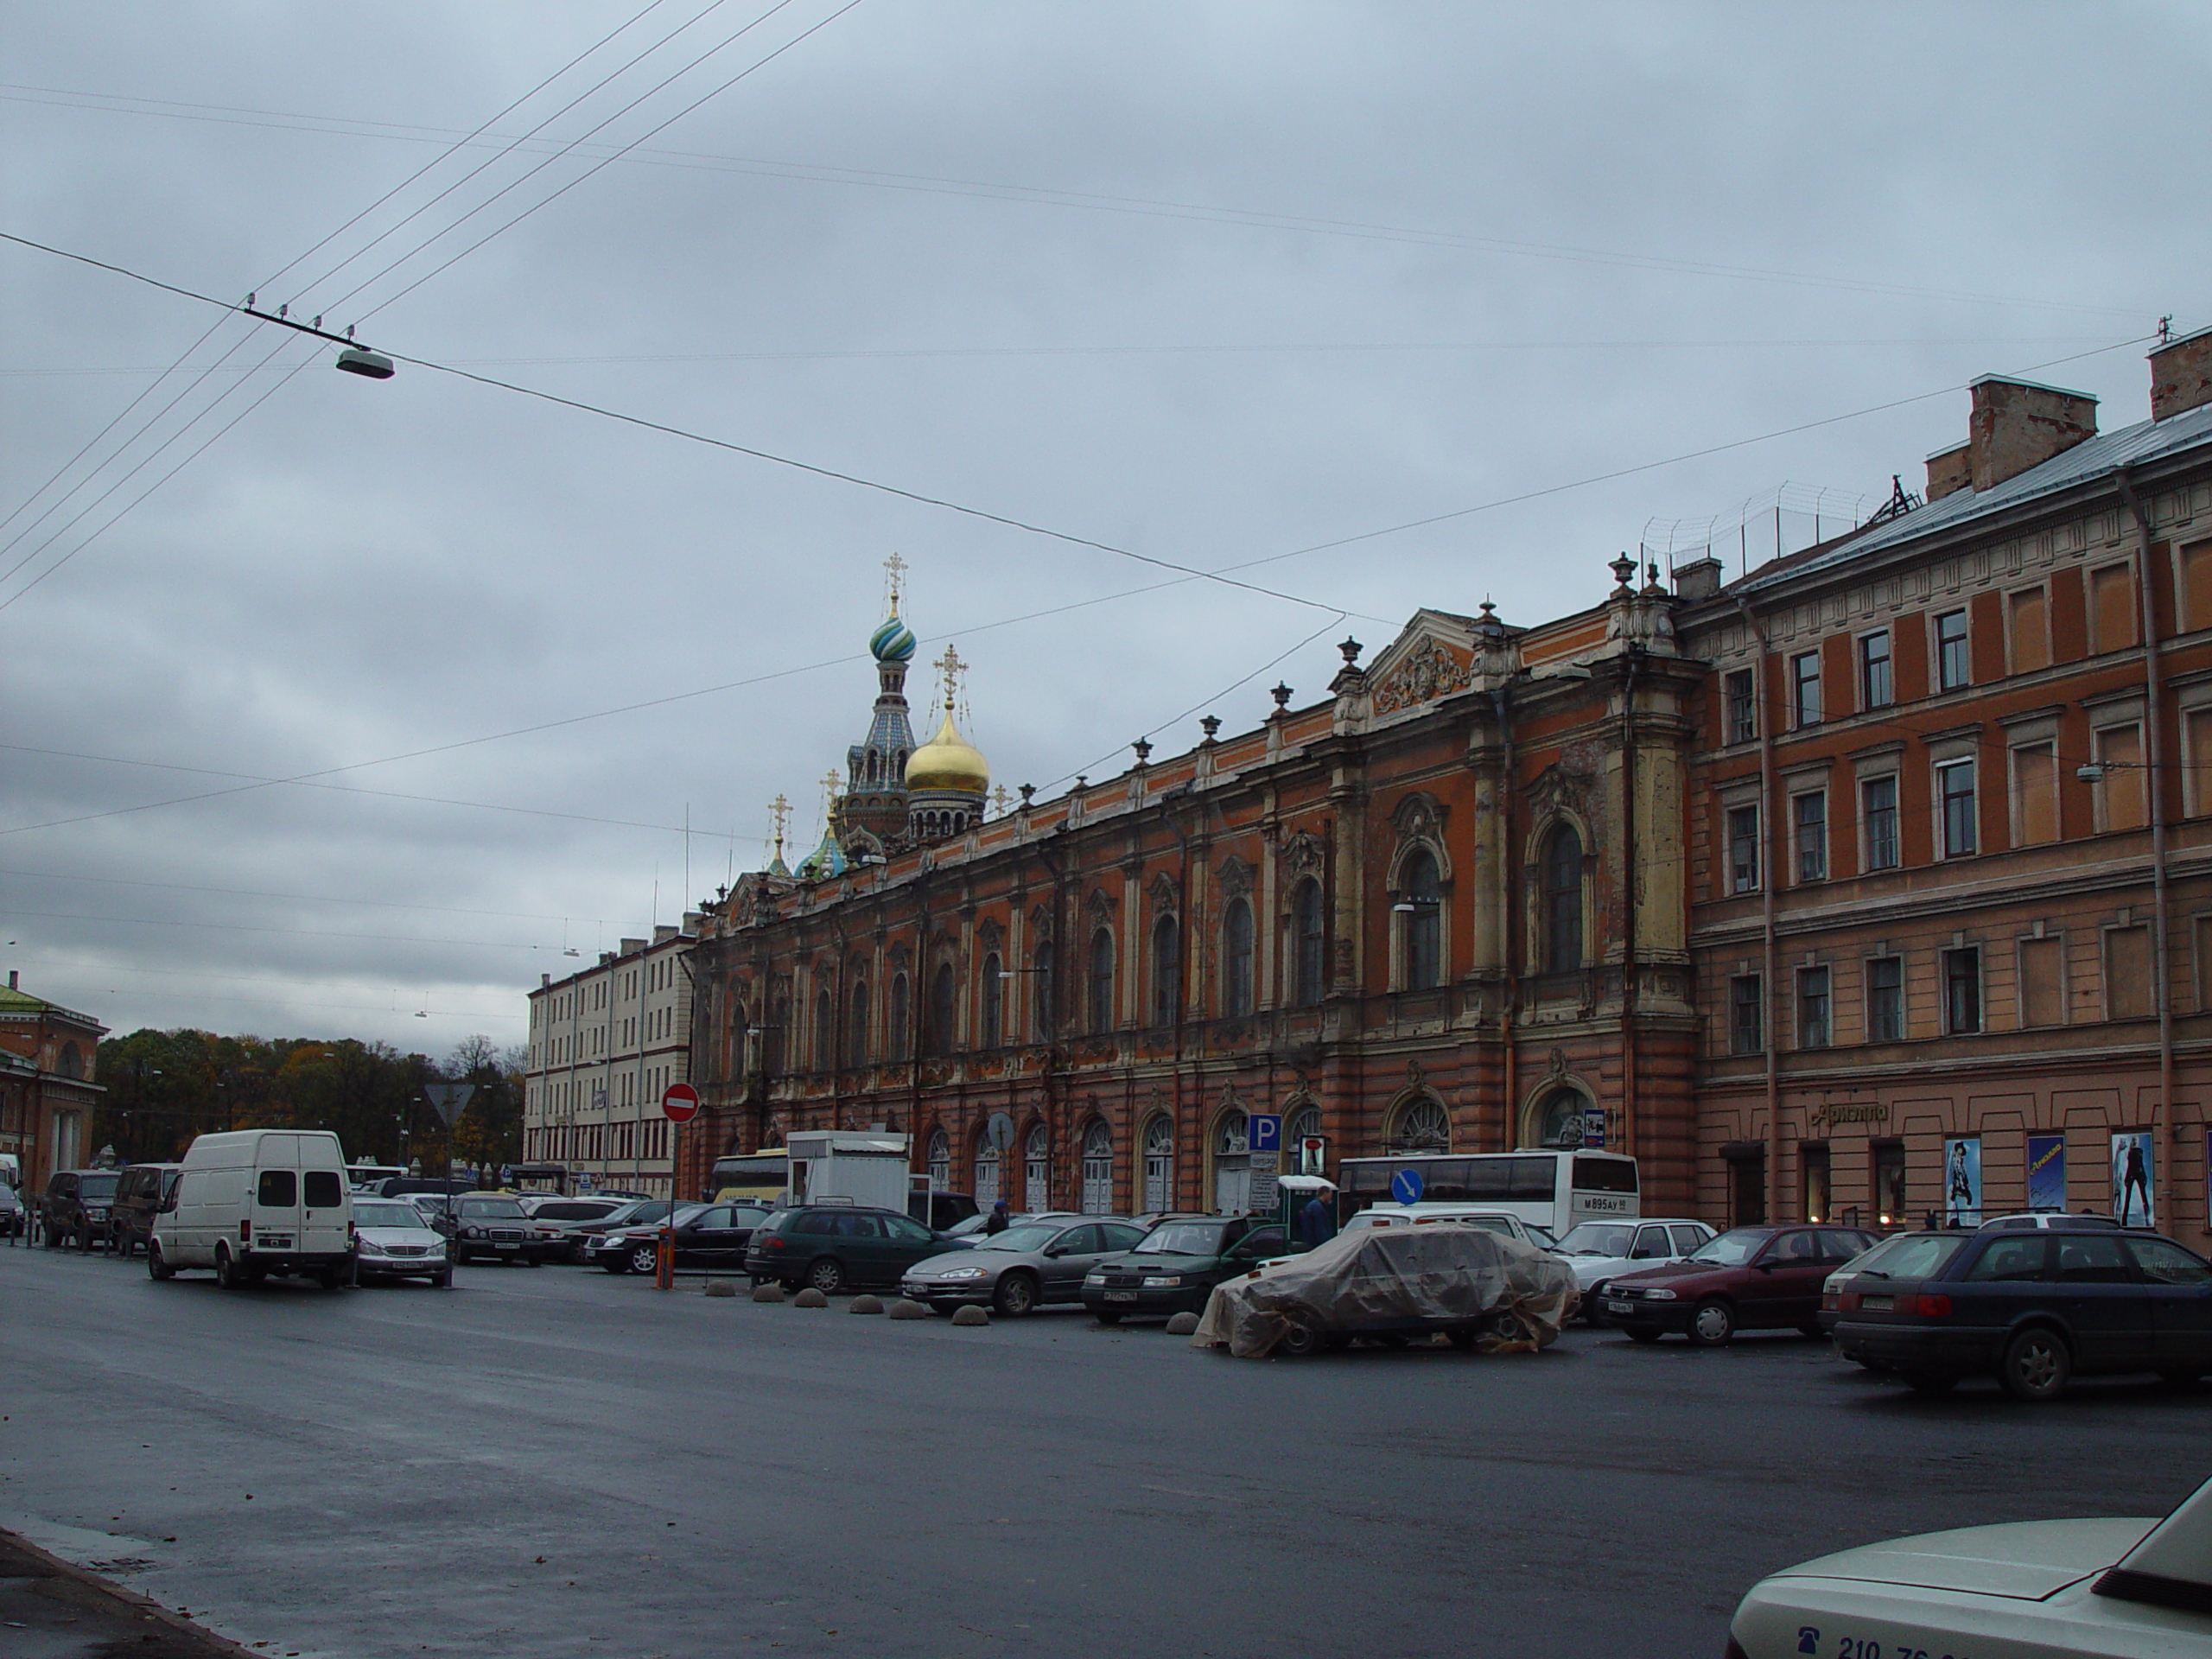 Visiting Meg in St. Petersburg, Russia